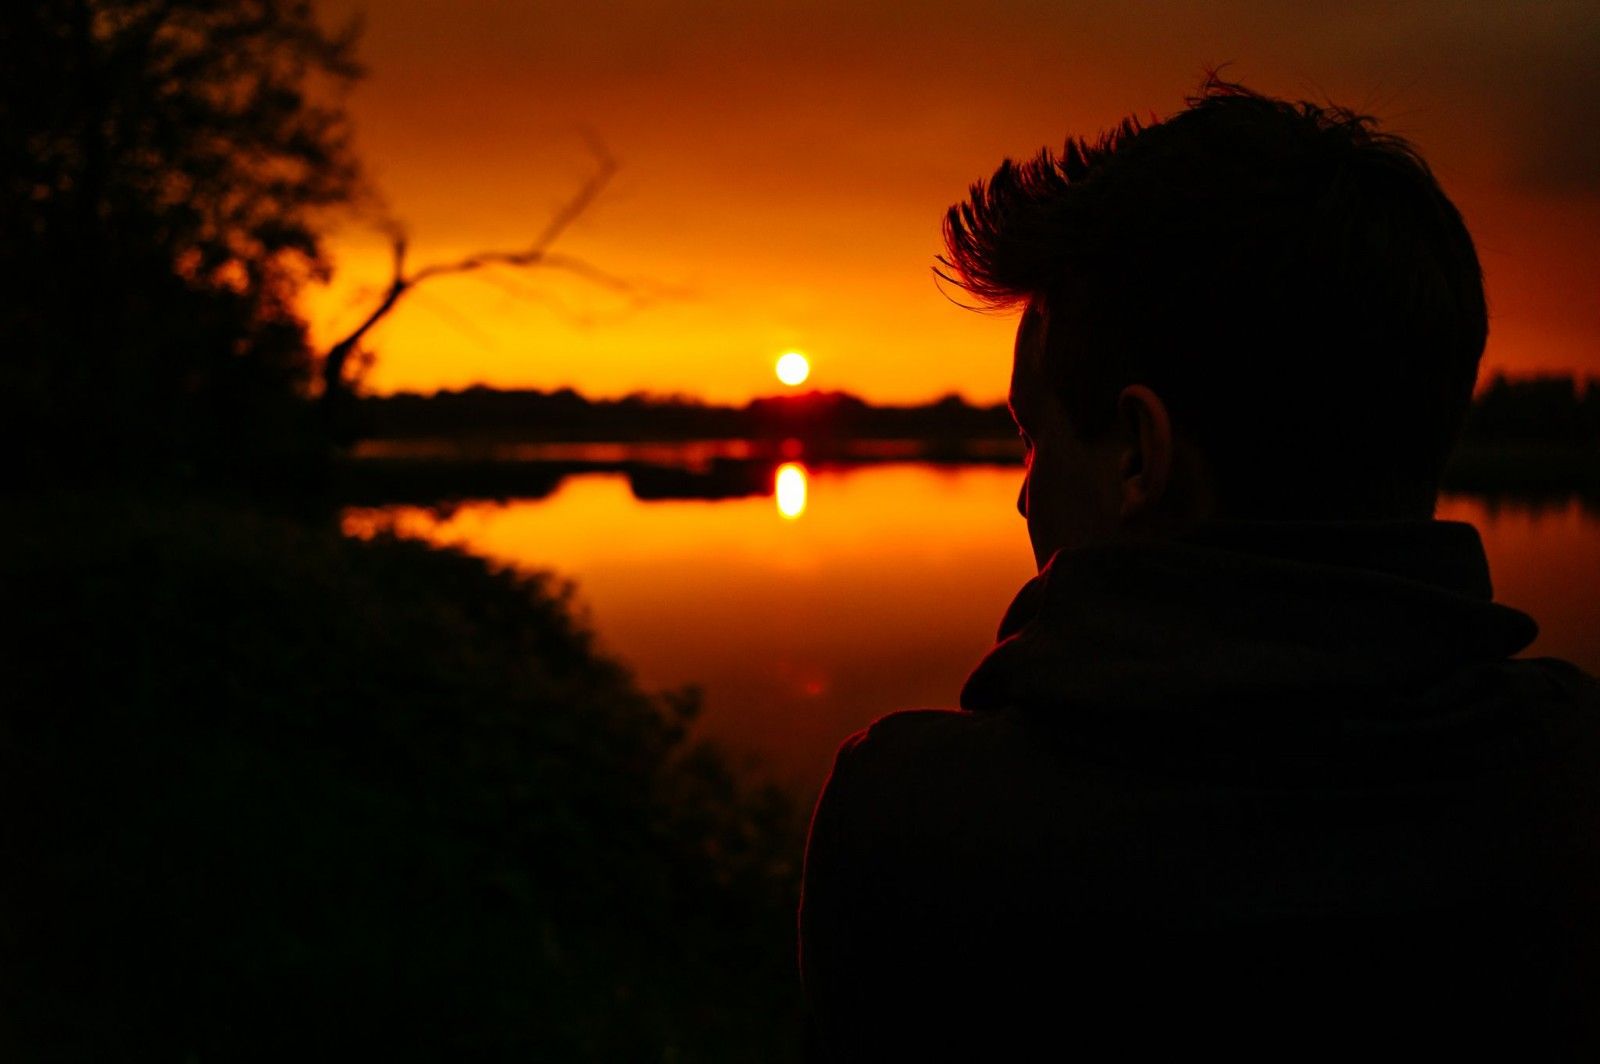 belgium_molsbroek_nature_sunset_28mm_elmarit_lorenz